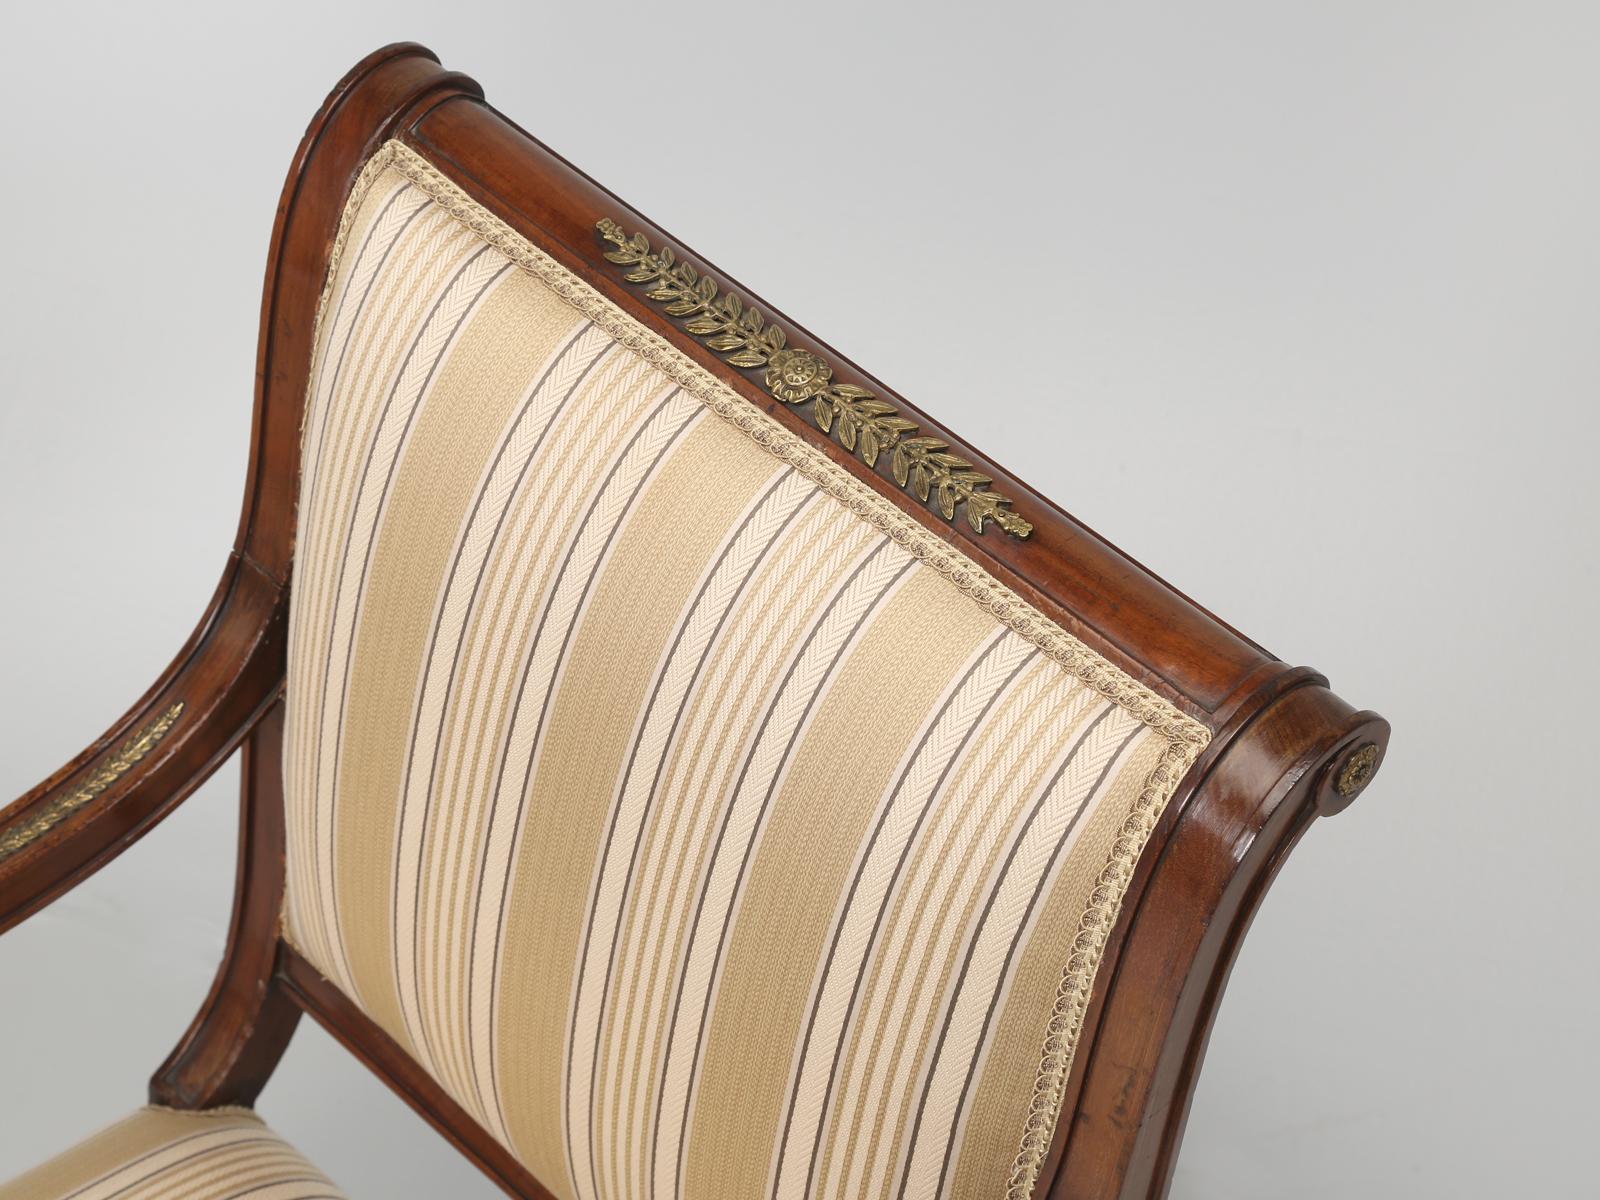 Ein feines Empire-Revival-Stuhlpaar aus vergoldetem, bronziertem Mahagoni. Wenn wir ein antikes Möbelstück mit Bronzeguss betrachten, schauen wir uns die Qualität der Bronzedetails genau an, die meistens schwach sind. Das Paar französischer